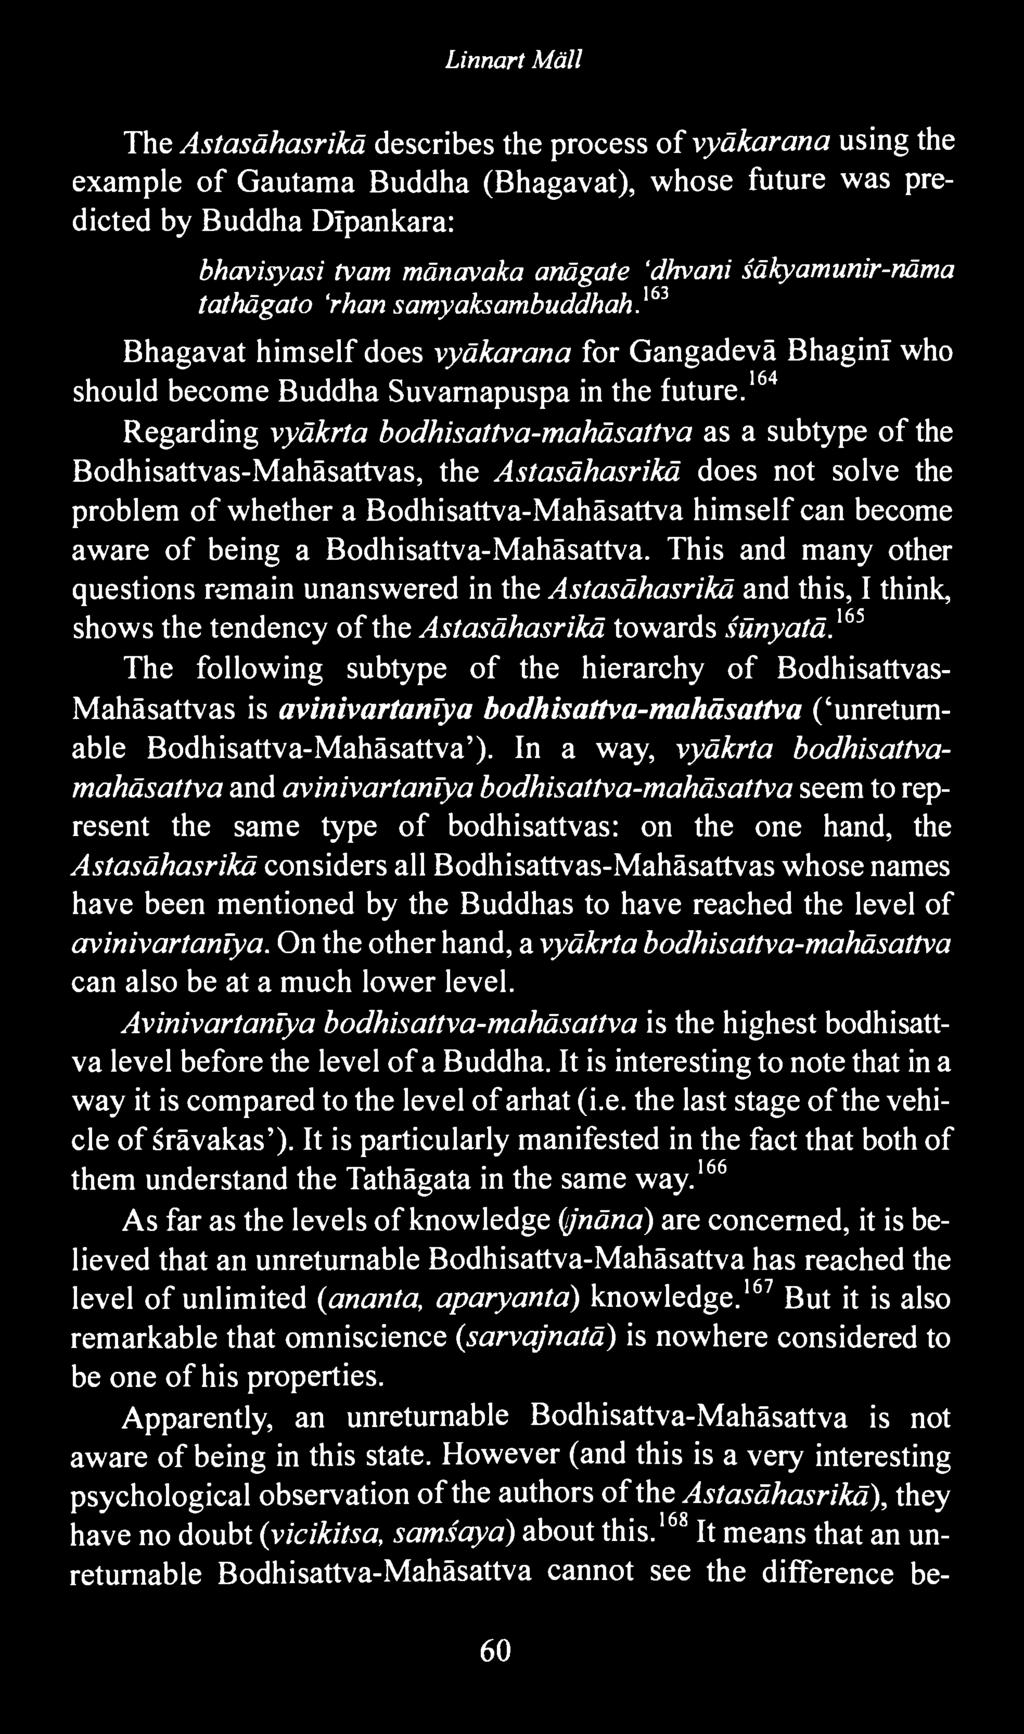 164 Regarding vyäkrta bodhisattva-mahäsattva as a subtype of the Bodhisattvas-Mahäsattvas, the Astasähasrikä does not solve the problem of whether a Bodhisattva-Mahäsattva himself can become aware of